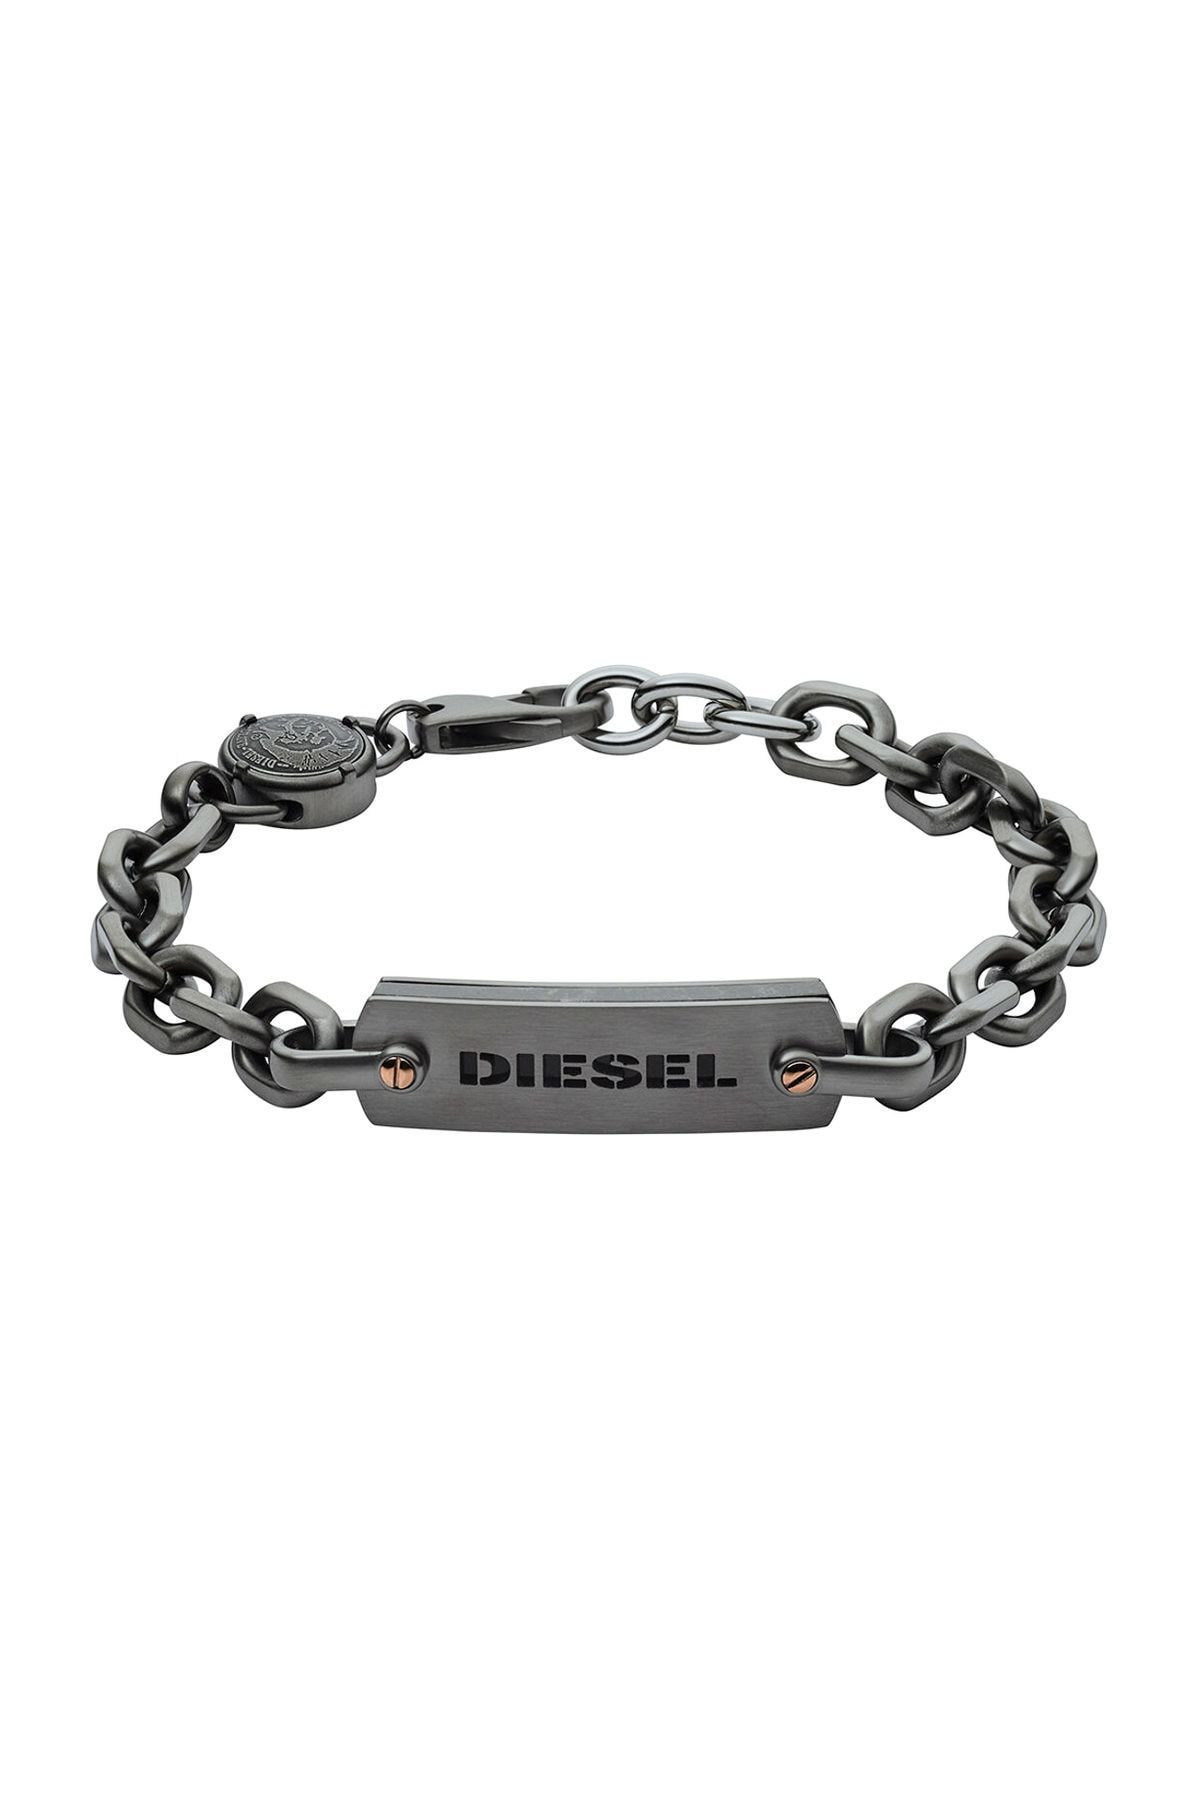 Diesel Erkek Çelik Bileklik DJDX1205-060